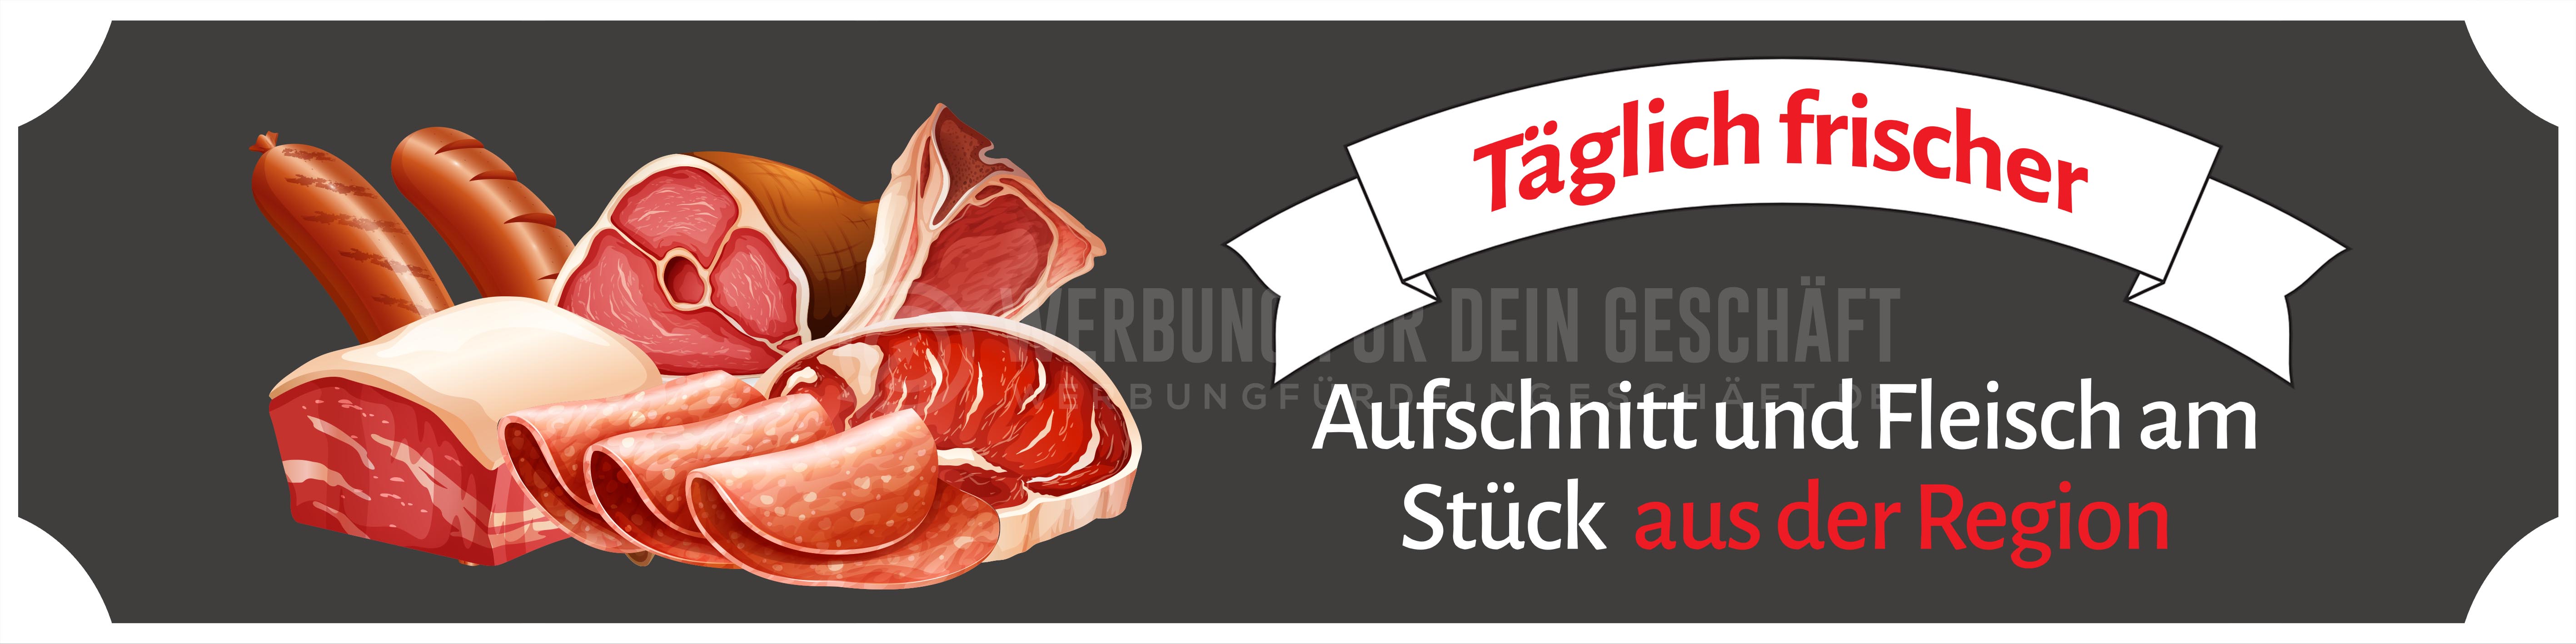 4:1 | Aufschnitt und Fleisch aus der Region Poster | Werbeposter für Metzger | 4 zu 1 Format